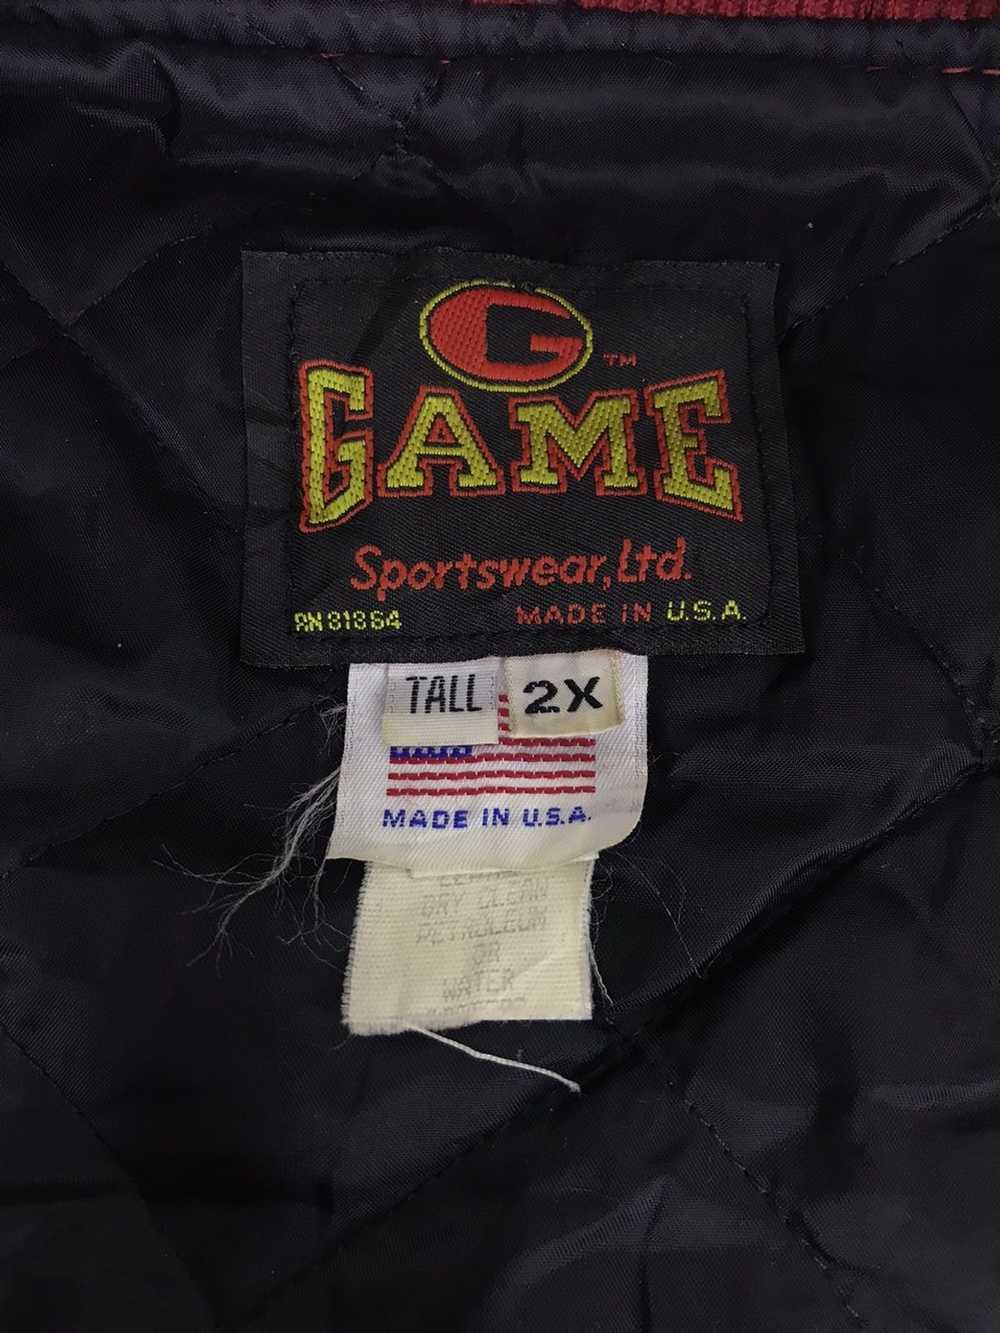 Vintage game varsity jacket - Gem